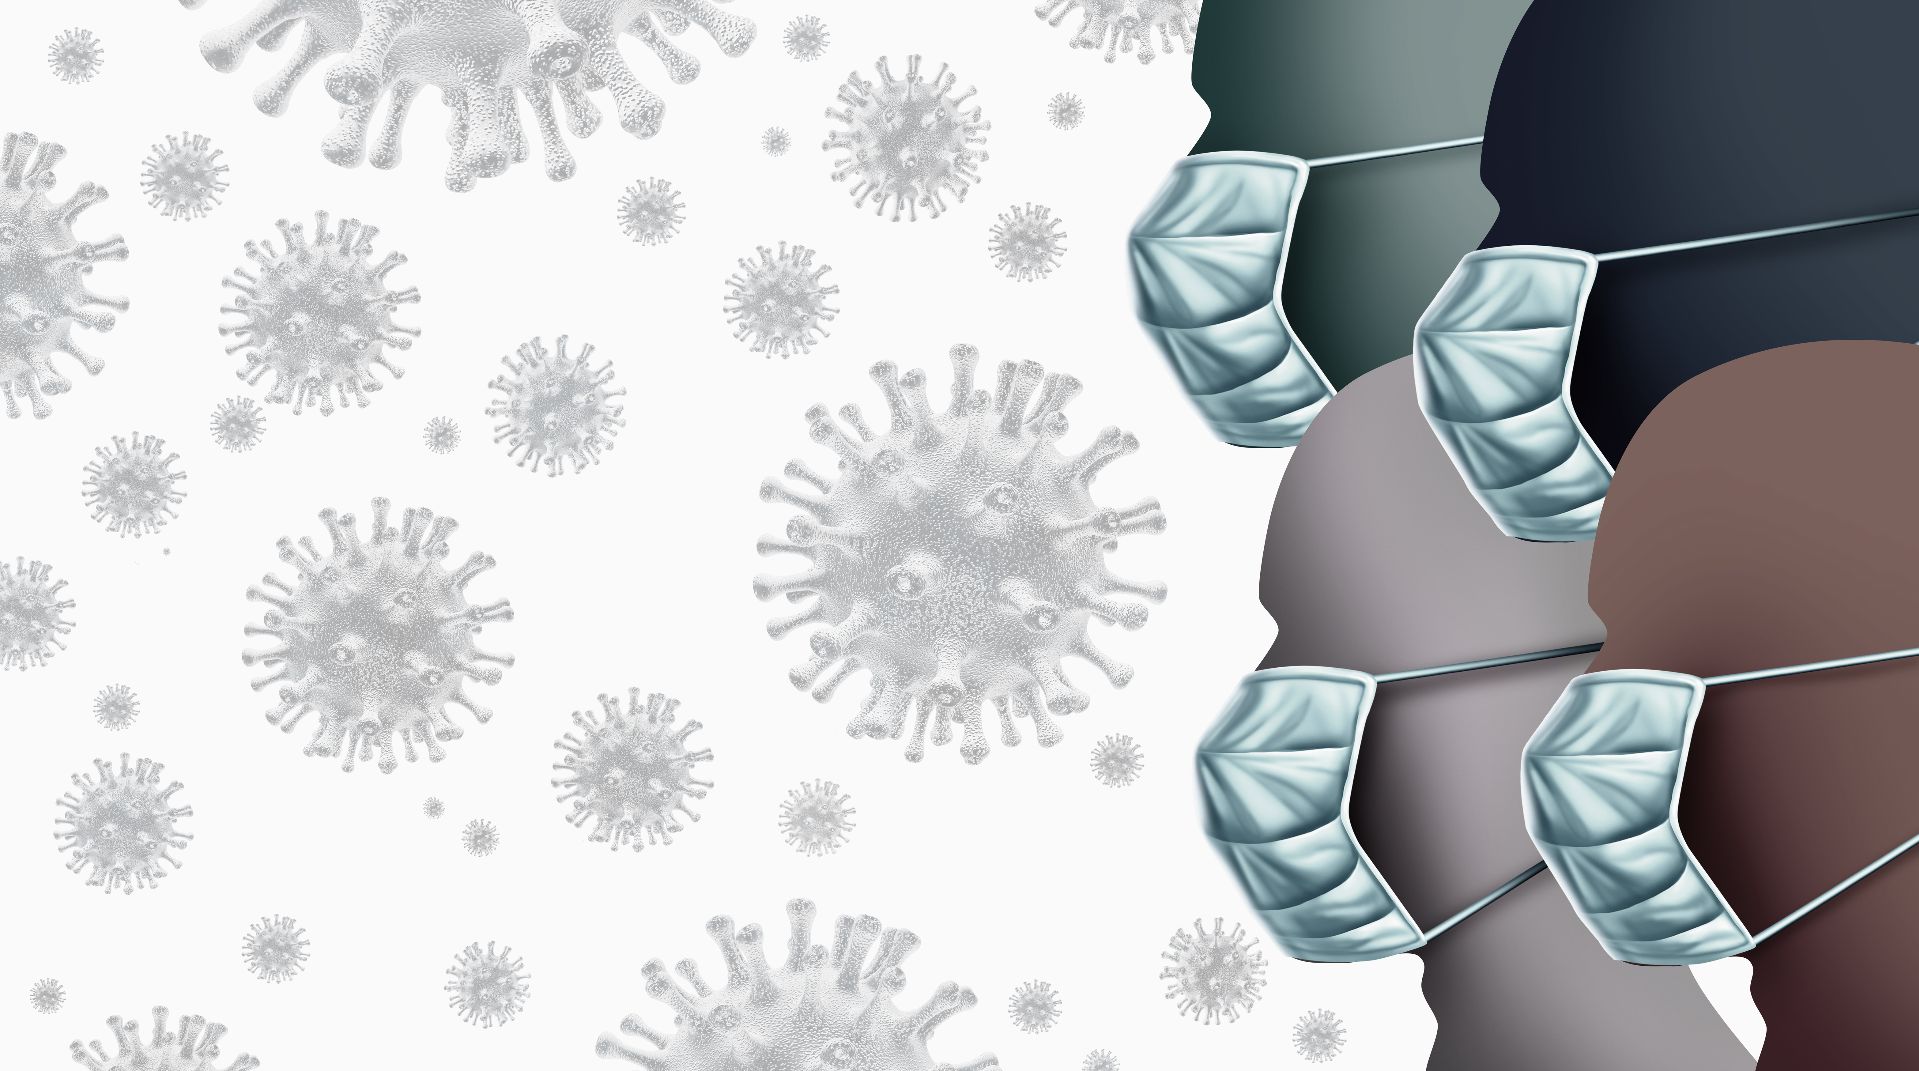 Impactul noului coronavirus asupra Europei